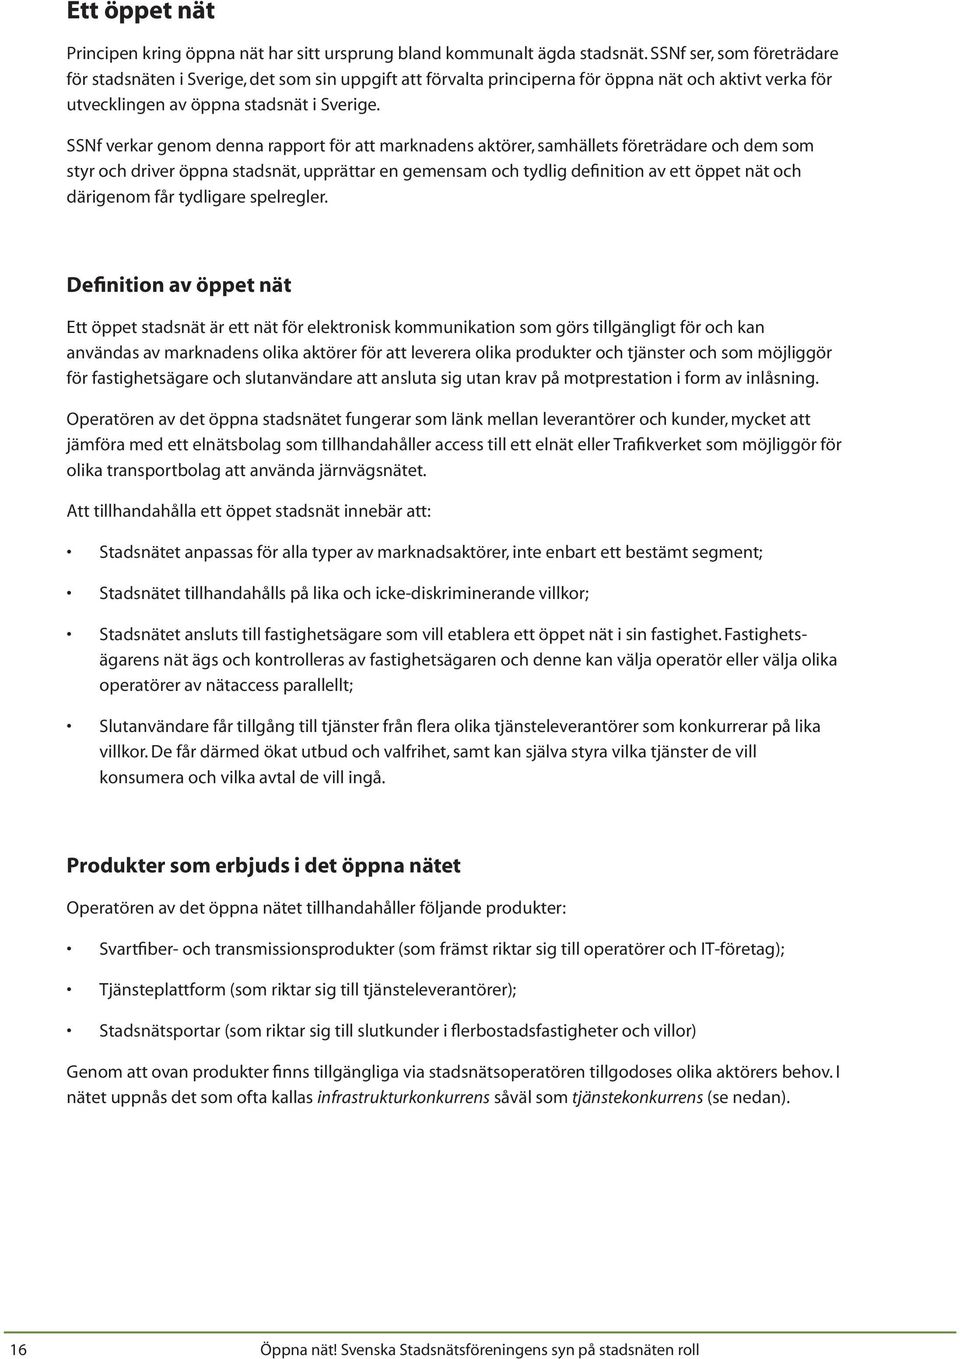 ÖPPNA NÄT. Svenska Stadsnätsföreningens syn på stadsnätens roll. Publicerad  i juni PDF Free Download